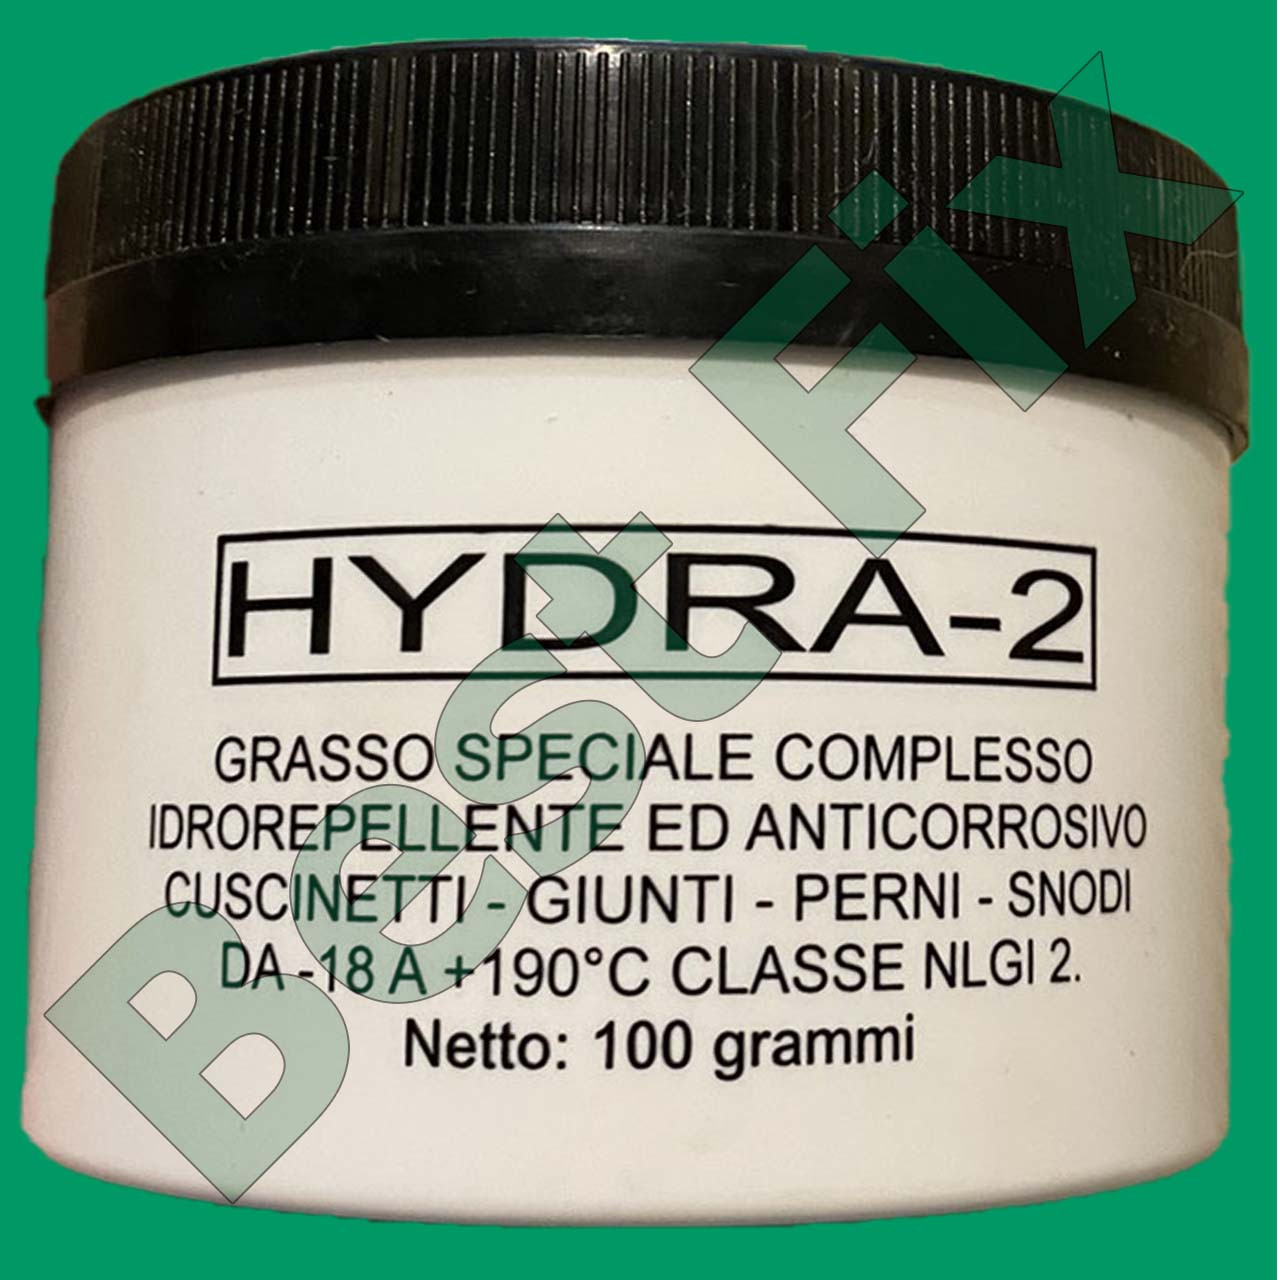 Hydra 2 смазка чем заменить маска ланком hydra zen как пользоваться